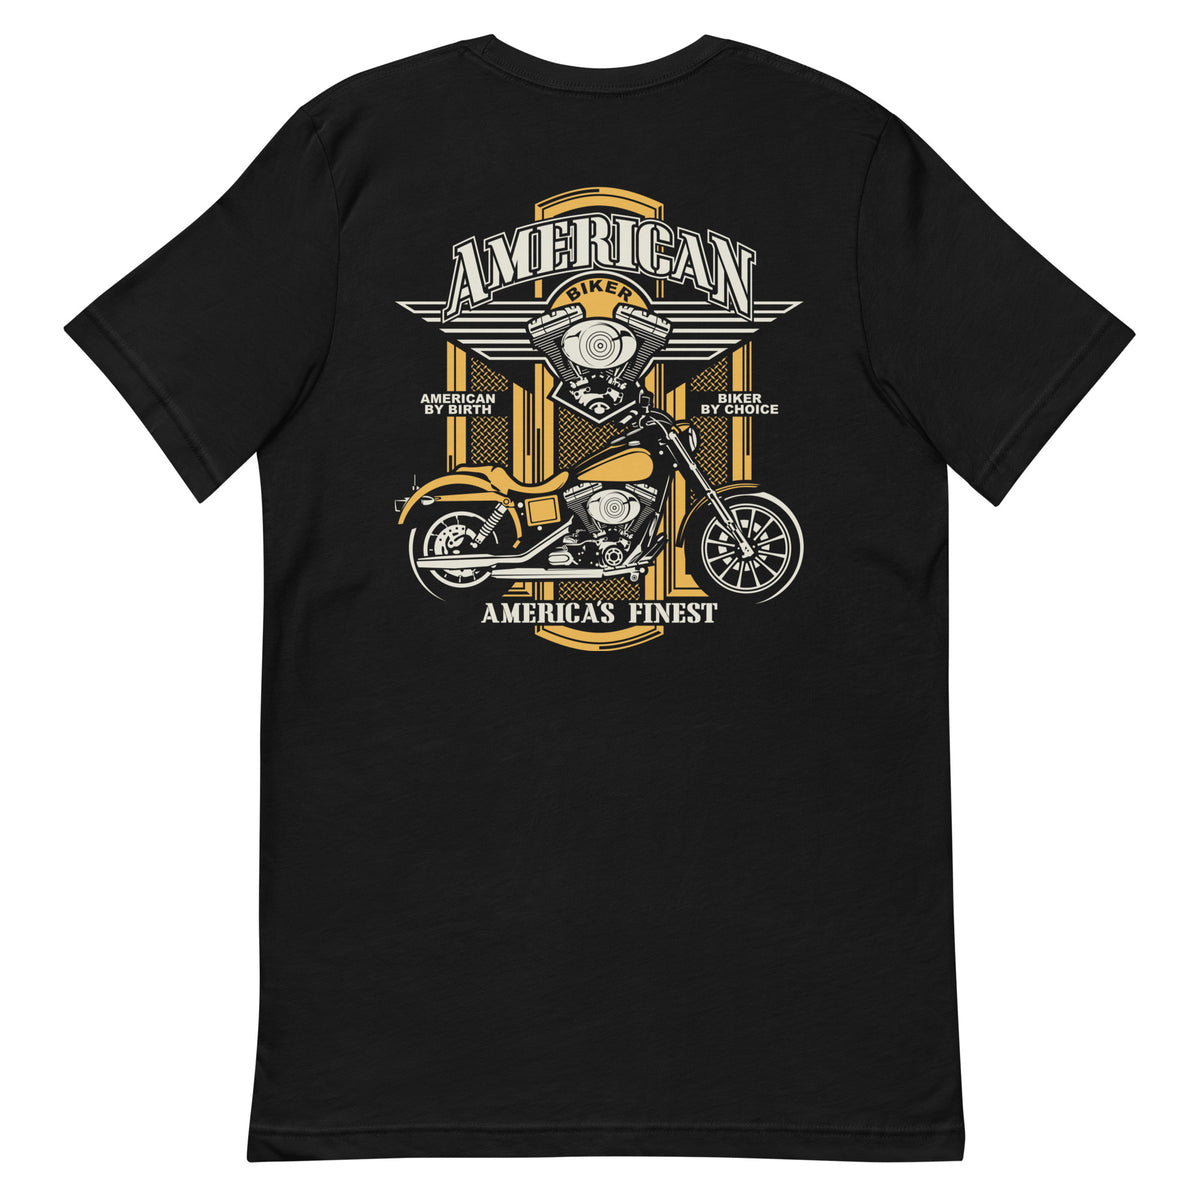 American Biker  Short-Sleeve T-Shirt - Rogue Biker Life